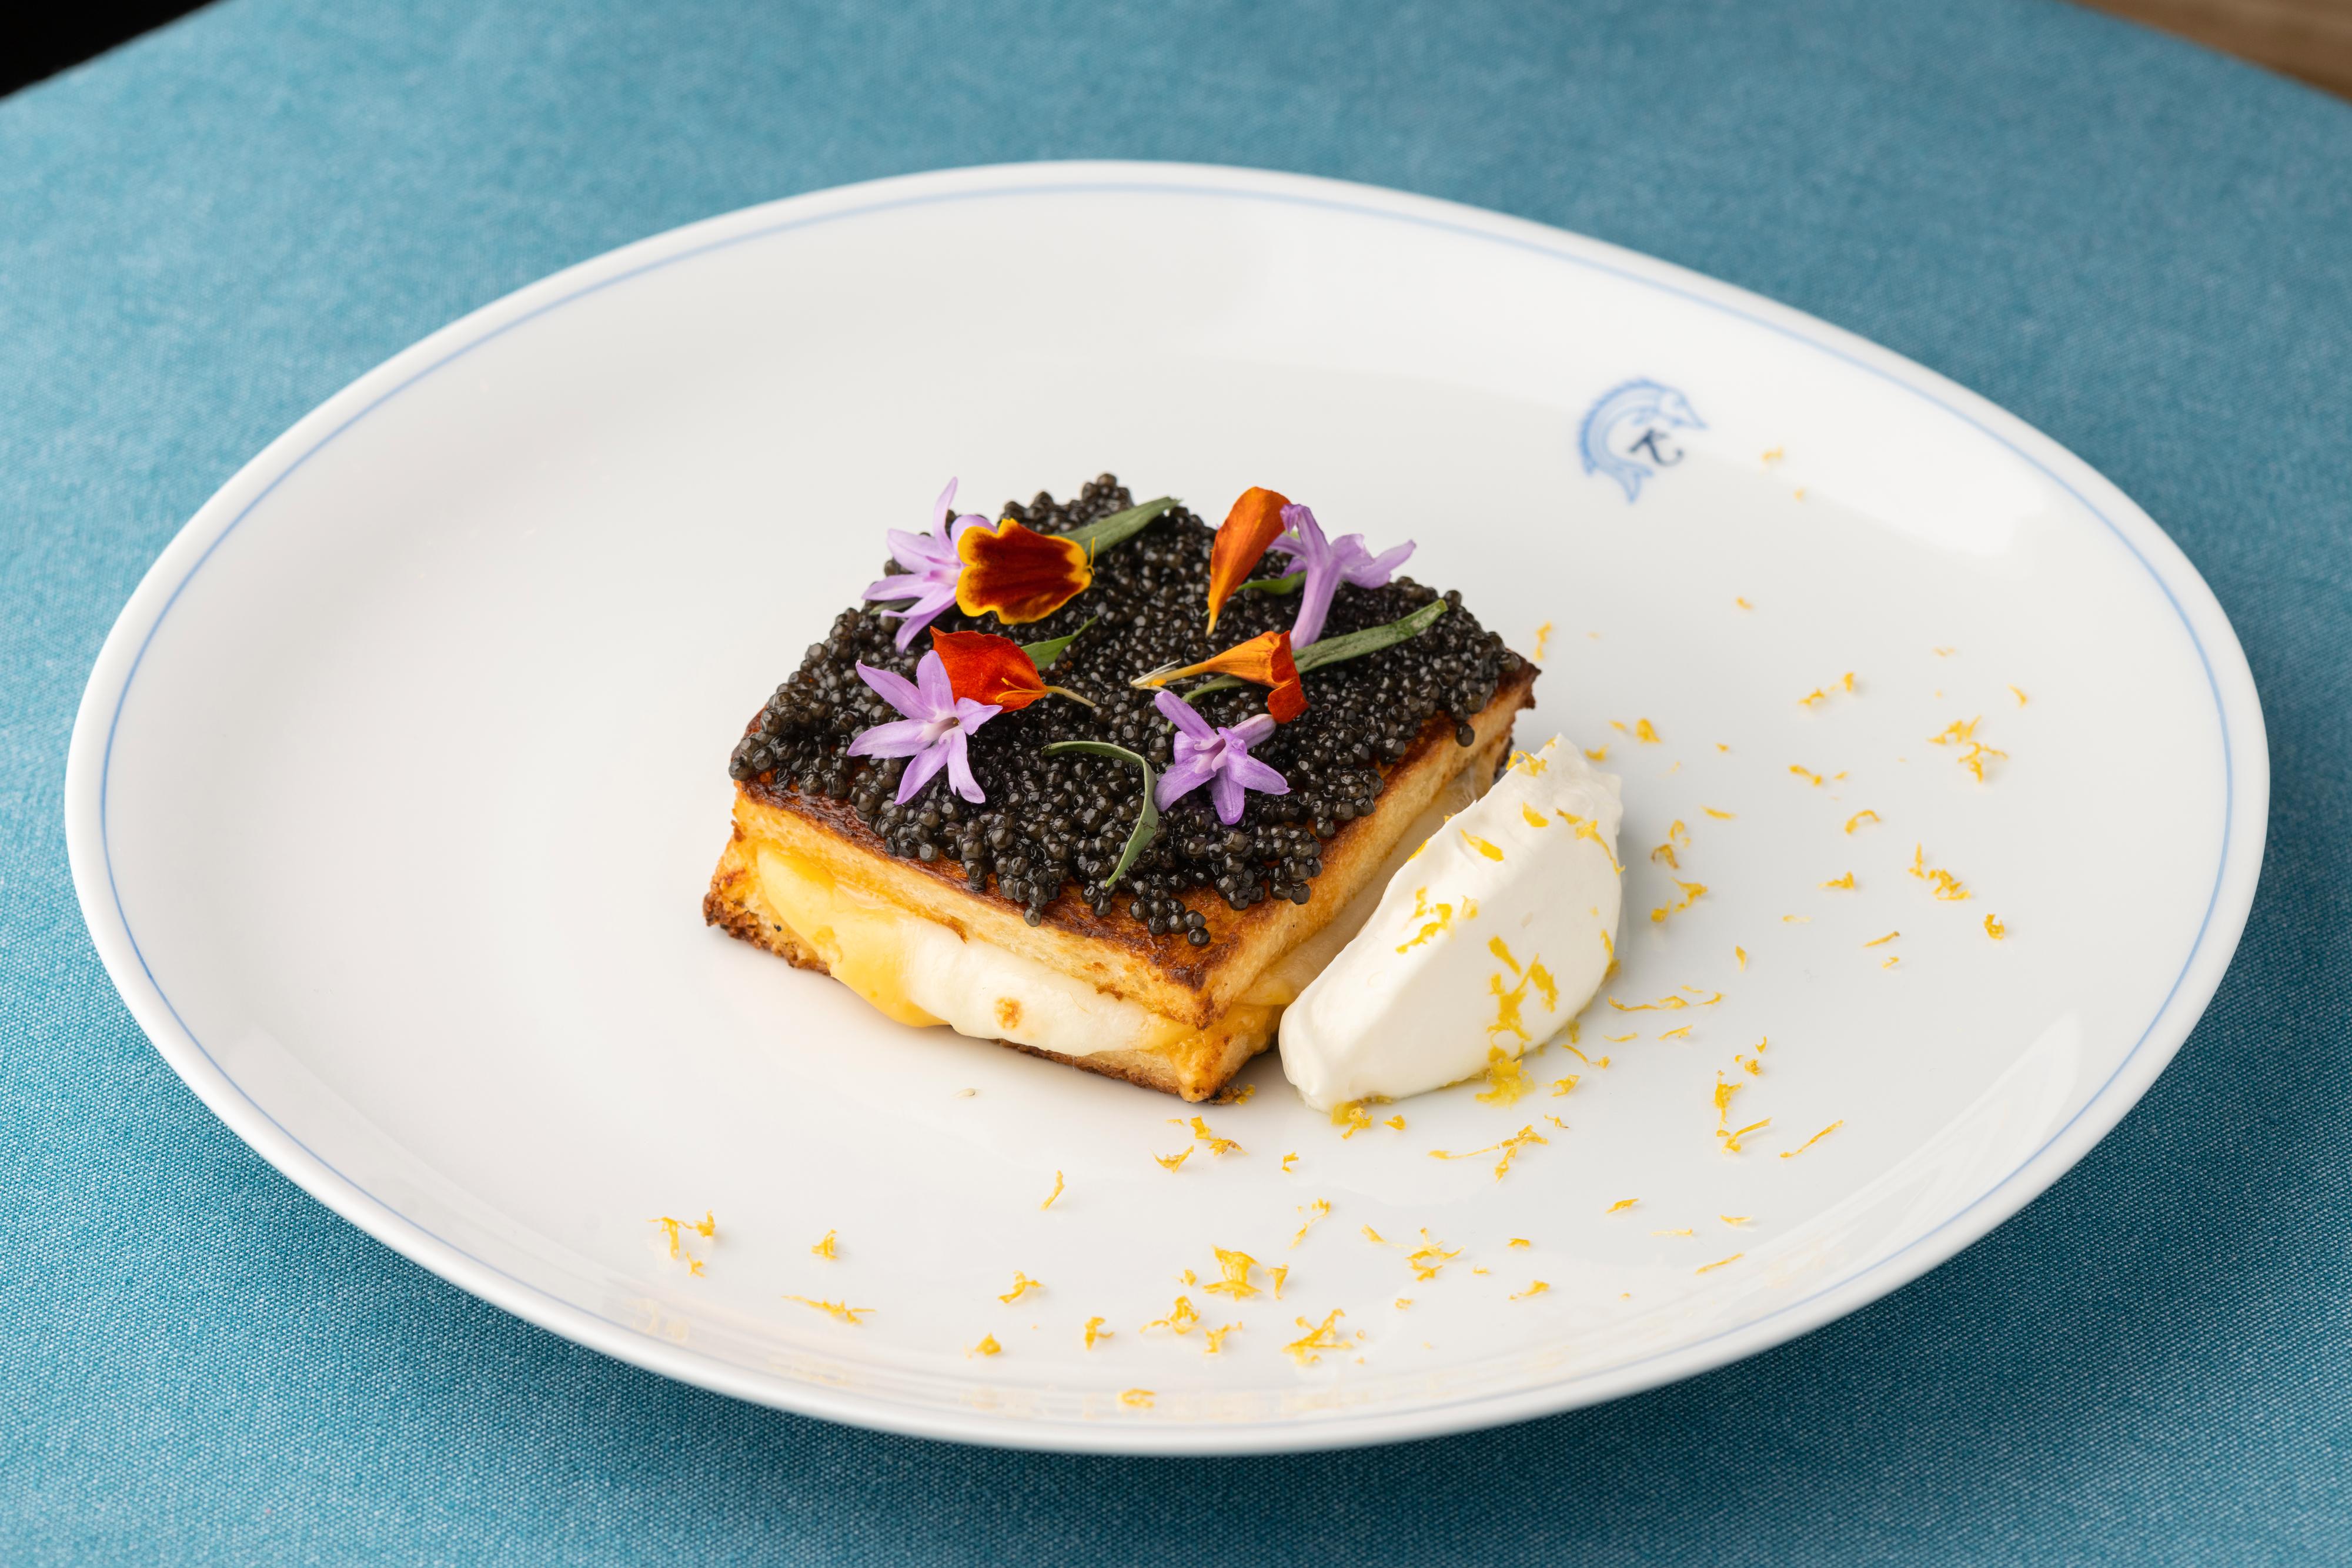 – I LA kom de opp med en typisk amerikansk «grilled cheese» med kaviar, som vi aldri ville kommet på her – og det var så godt, sier Anoushka. Nå finnes den på menyen i Paris også. 